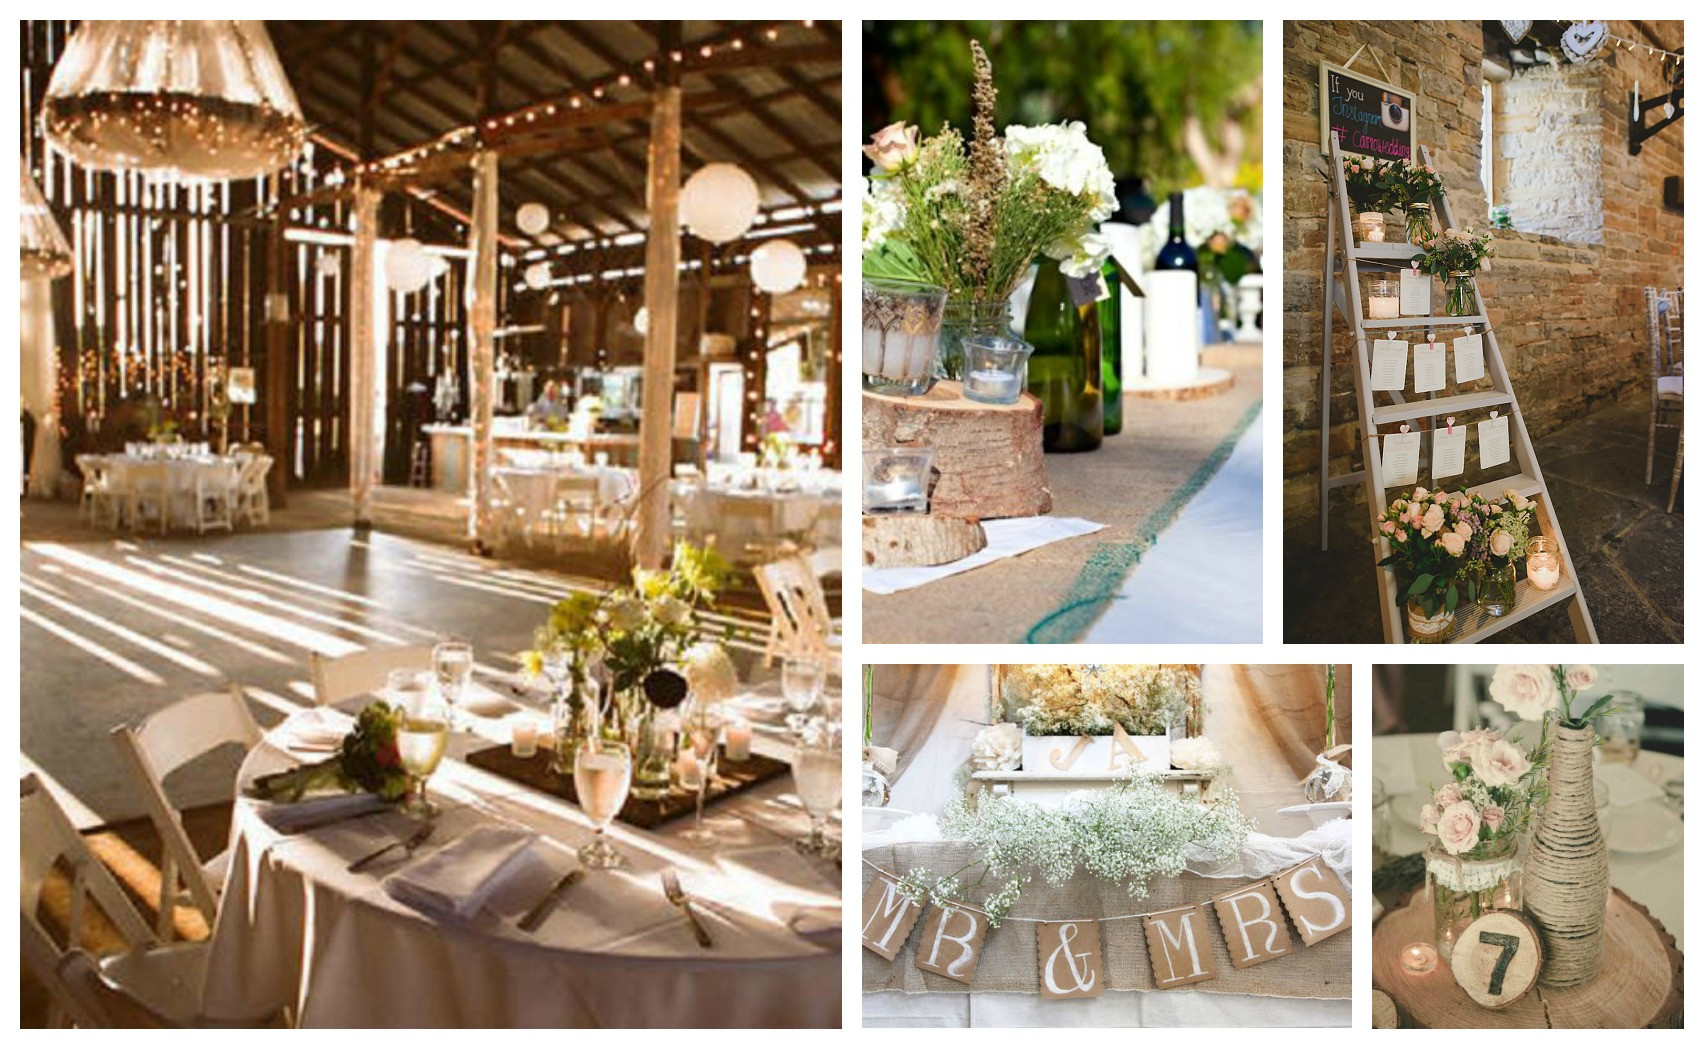 DIY Wedding Reception Ideas
 Awesome DIY Rustic Wedding Decorations That Will Warm Your